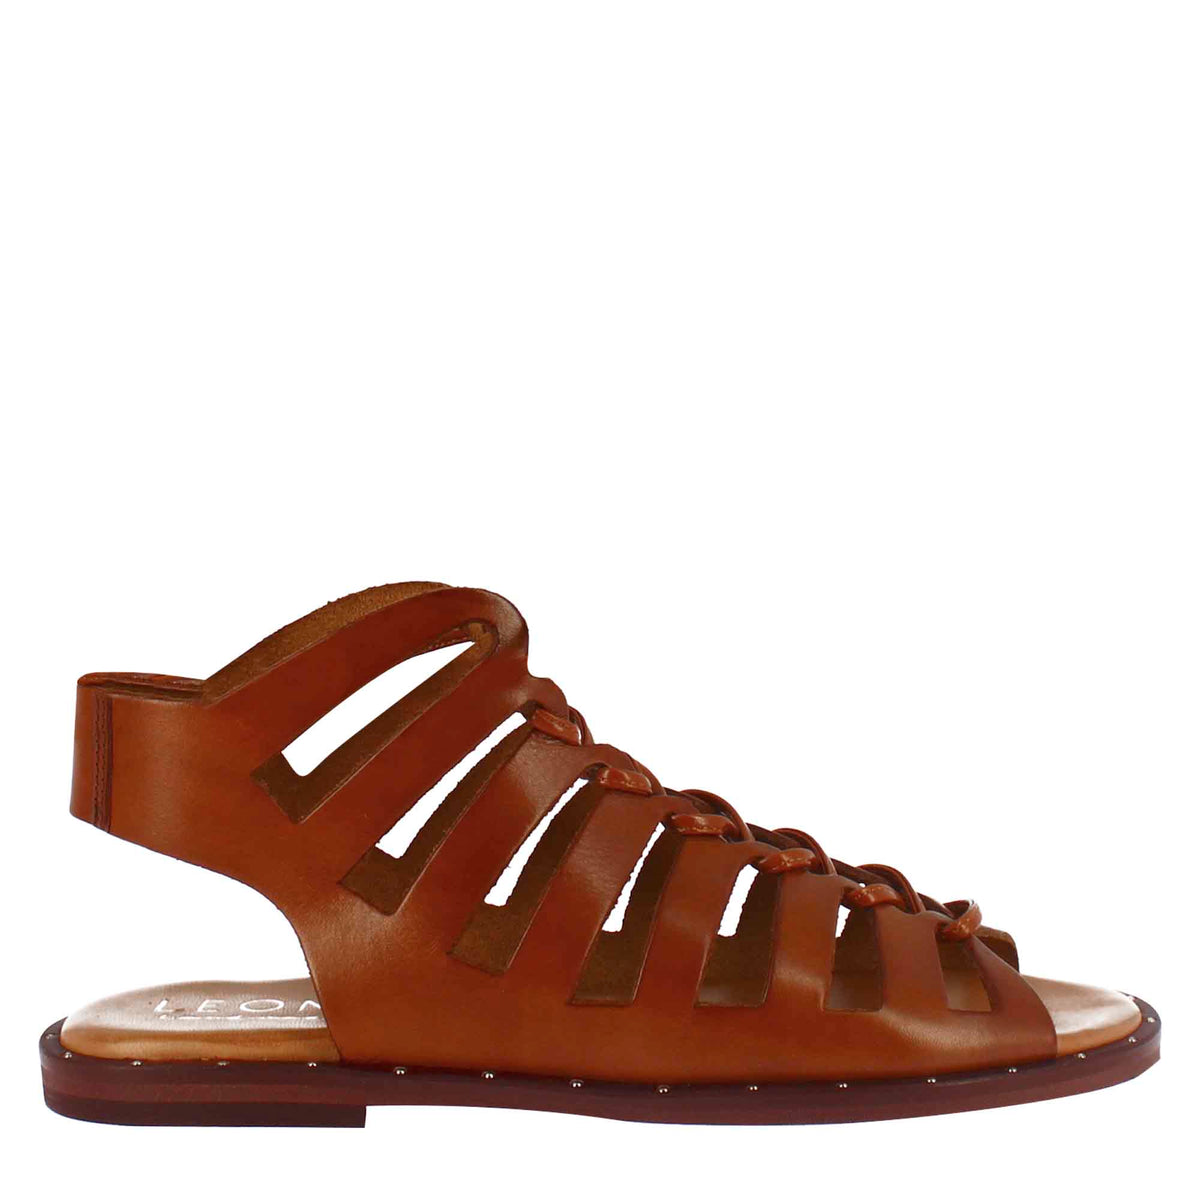 Handgefertigte braune Leder-Gladiator-Sandale für Frauen mit Schnürsenkeln